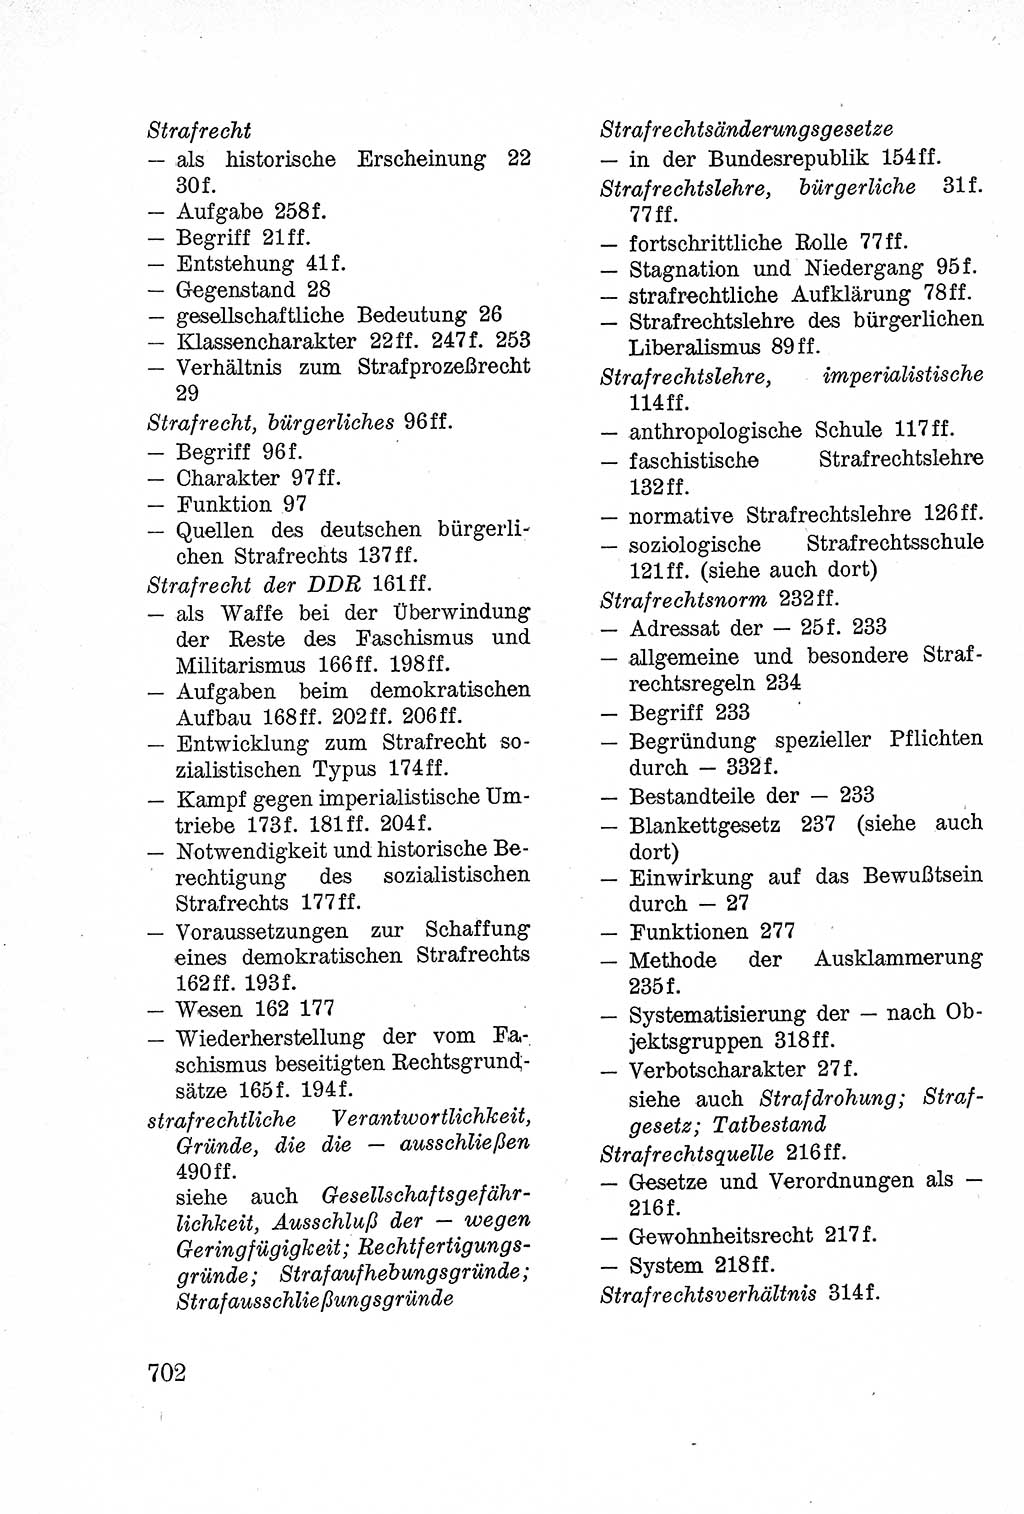 Lehrbuch des Strafrechts der Deutschen Demokratischen Republik (DDR), Allgemeiner Teil 1957, Seite 702 (Lb. Strafr. DDR AT 1957, S. 702)